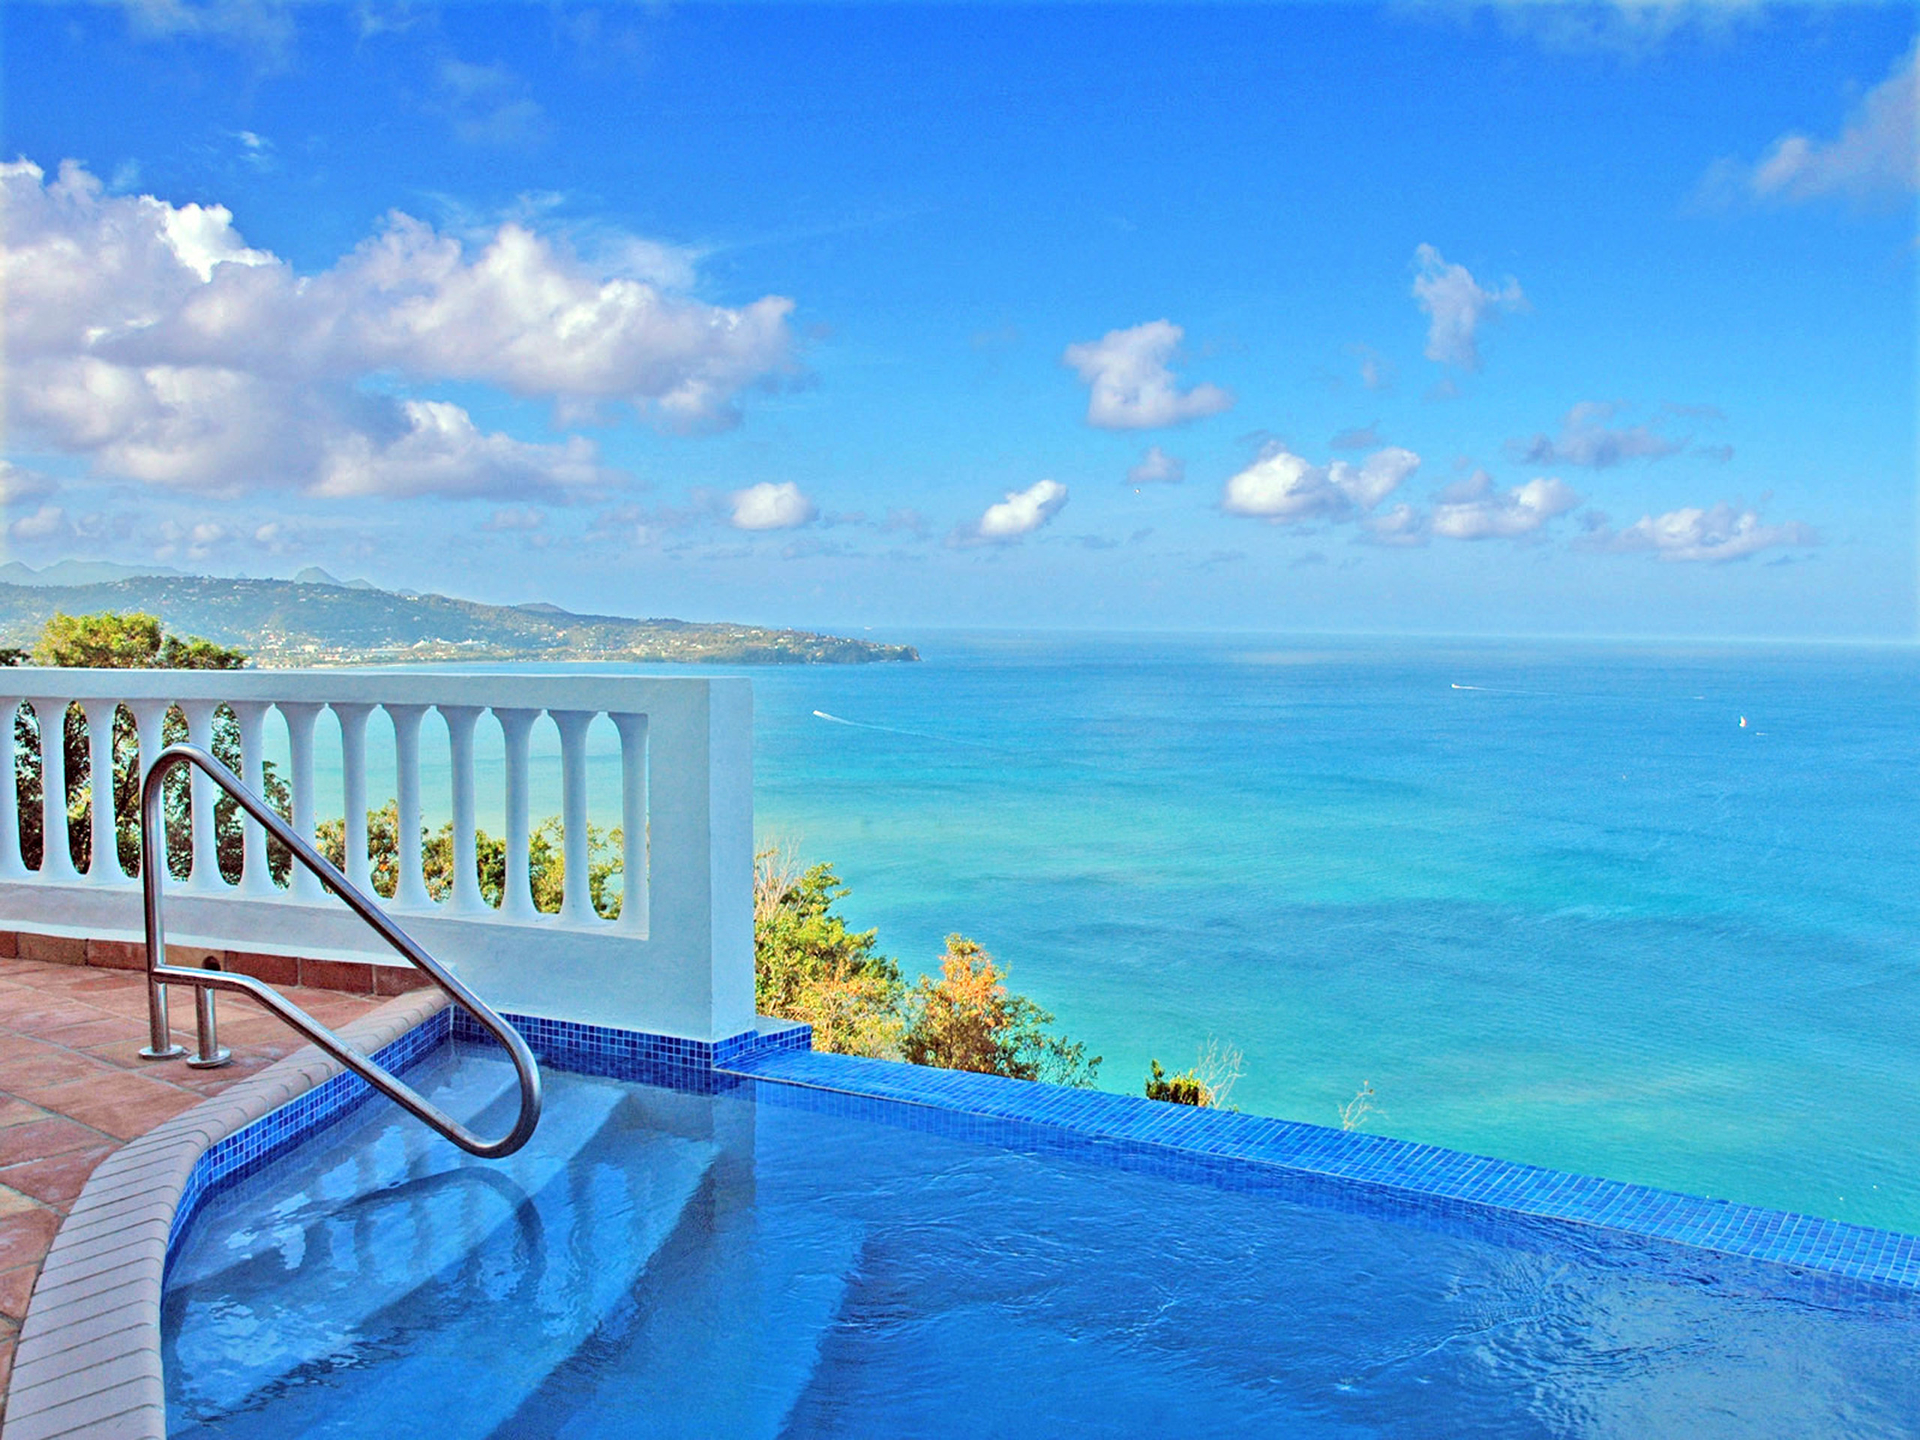 Download mobile wallpaper Ocean, Tropical, Resort, Pool, Man Made for free.